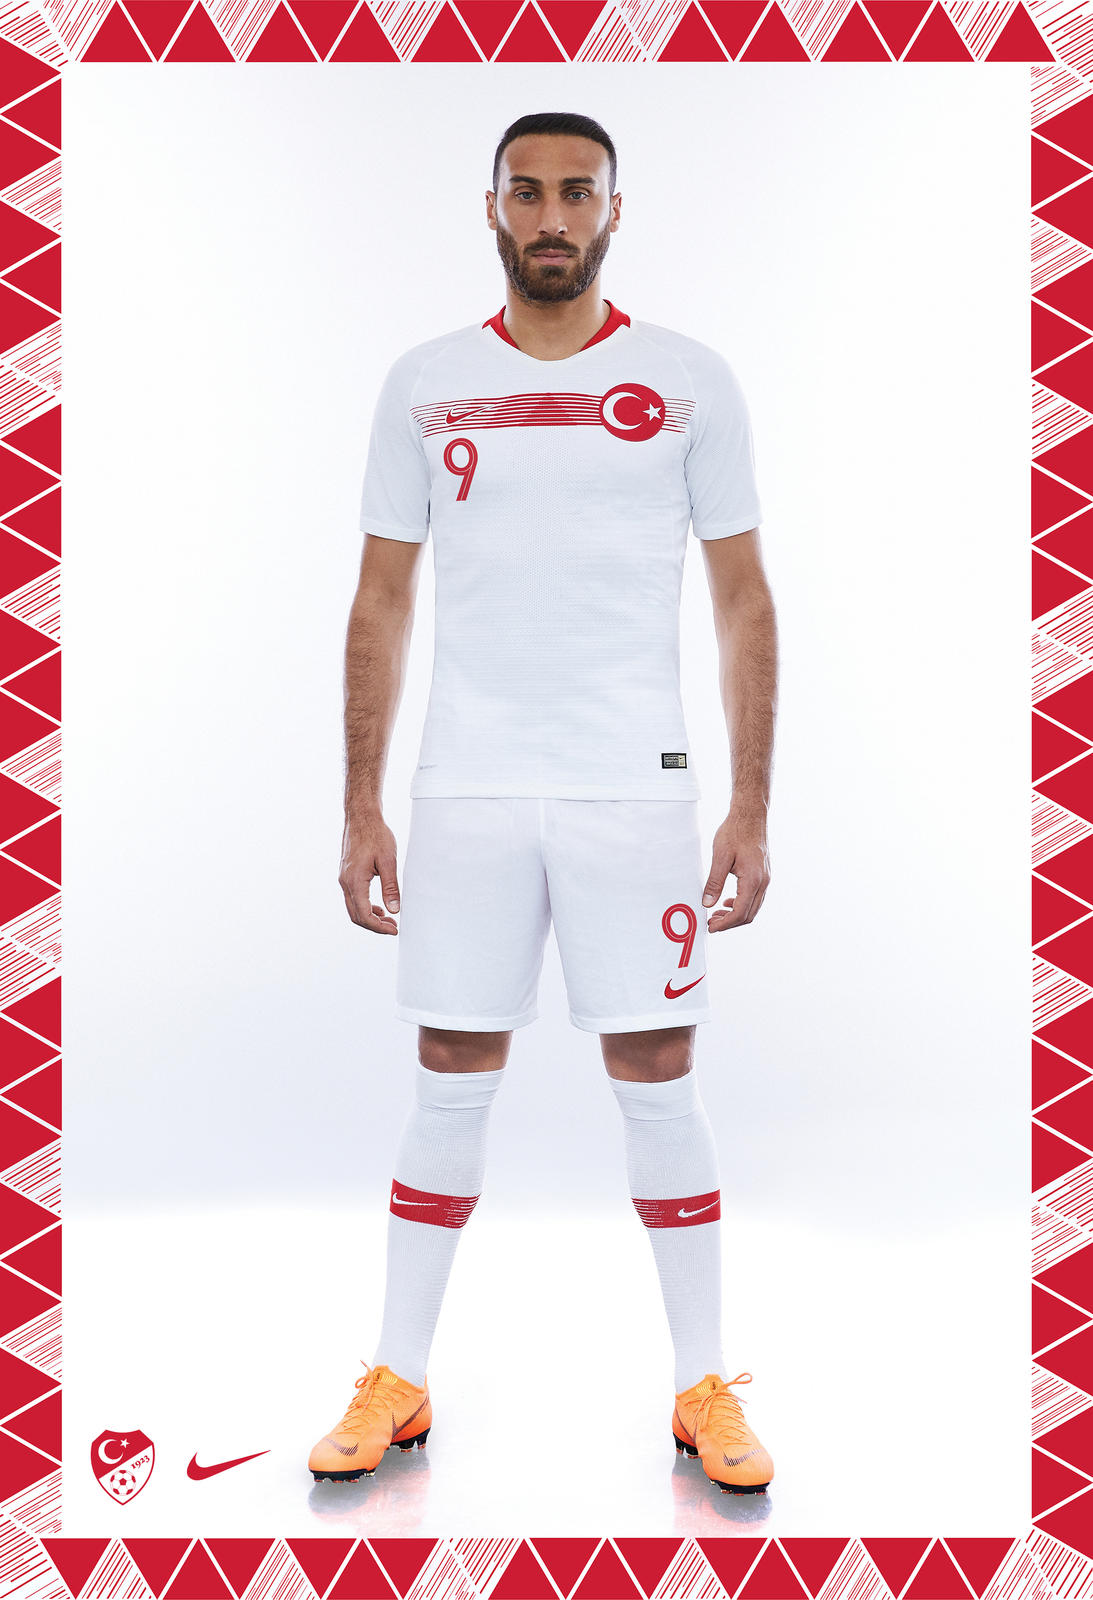 Turquie 2018 maillot de foot exterieur officiel Nike